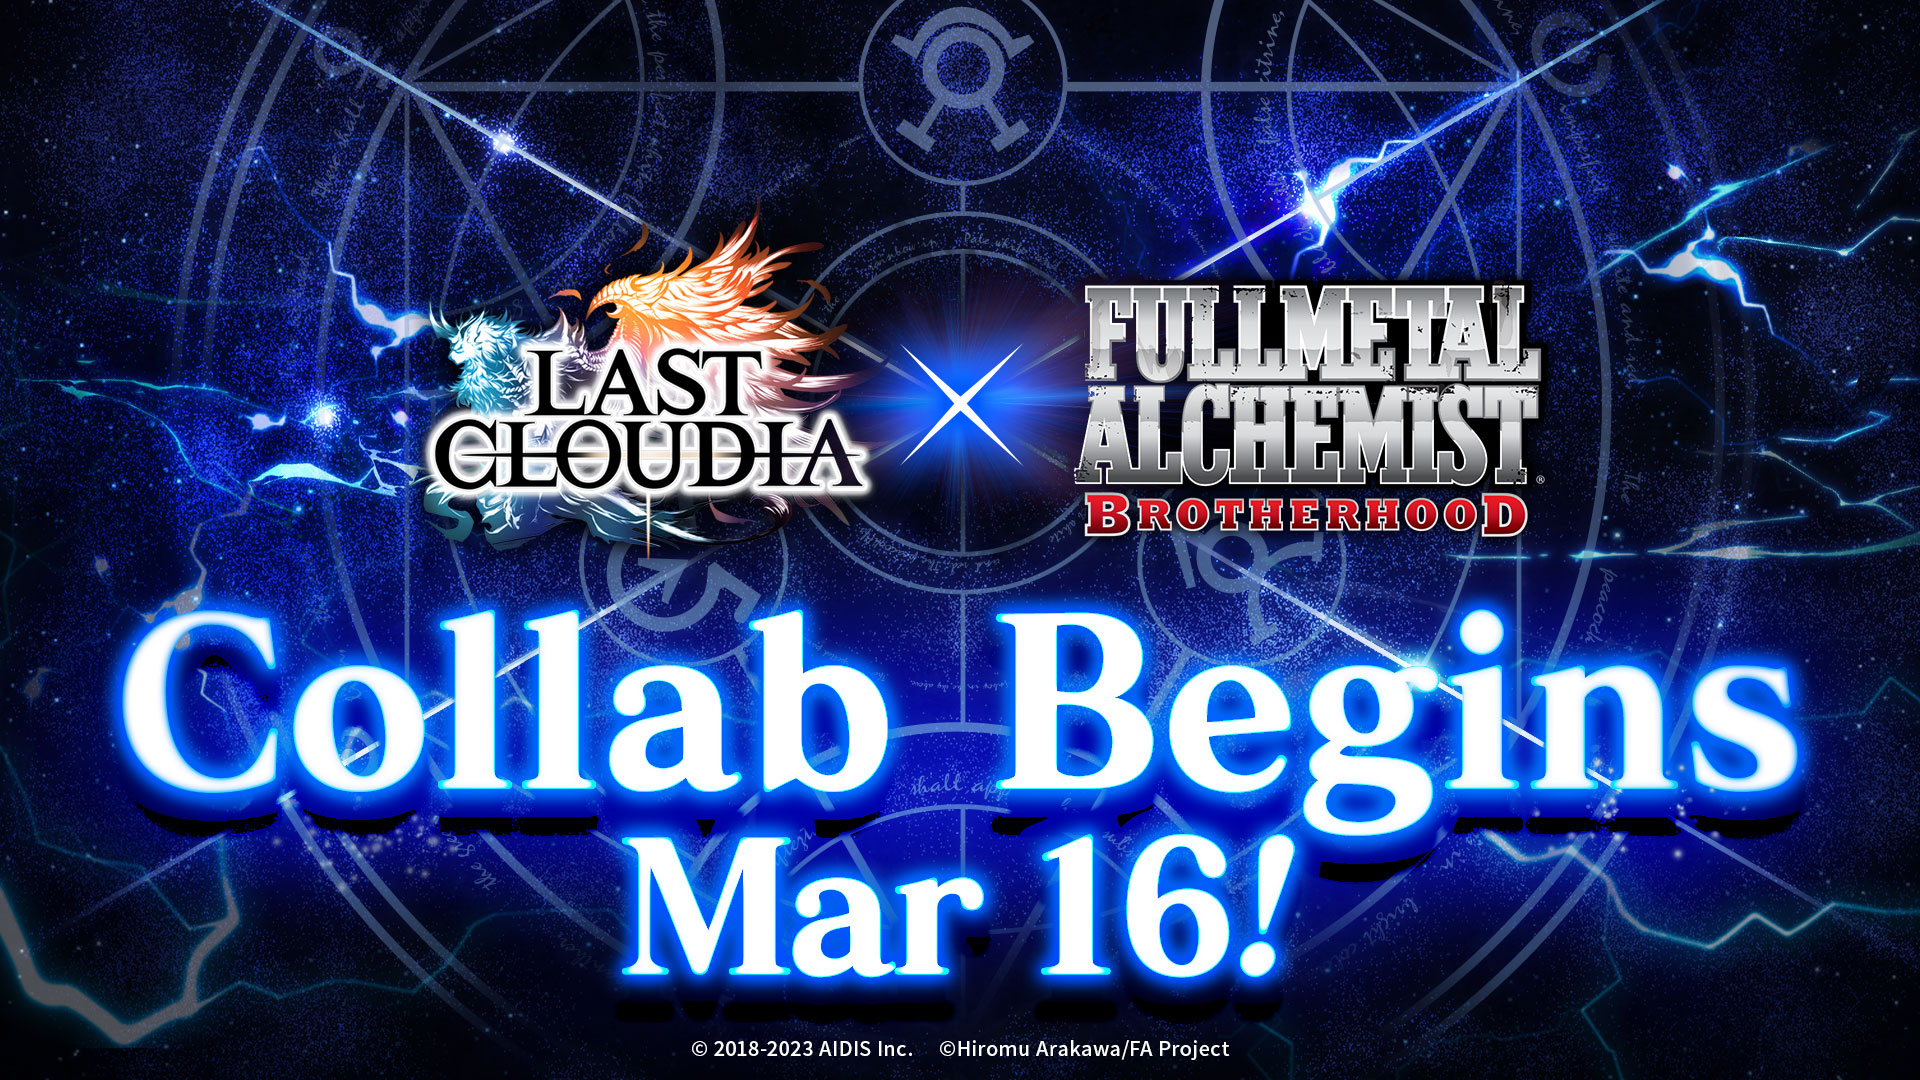 Limited-Time Last Cloudia / FULLMETAL ALCHEMIST BROTHERHOOD Collab!